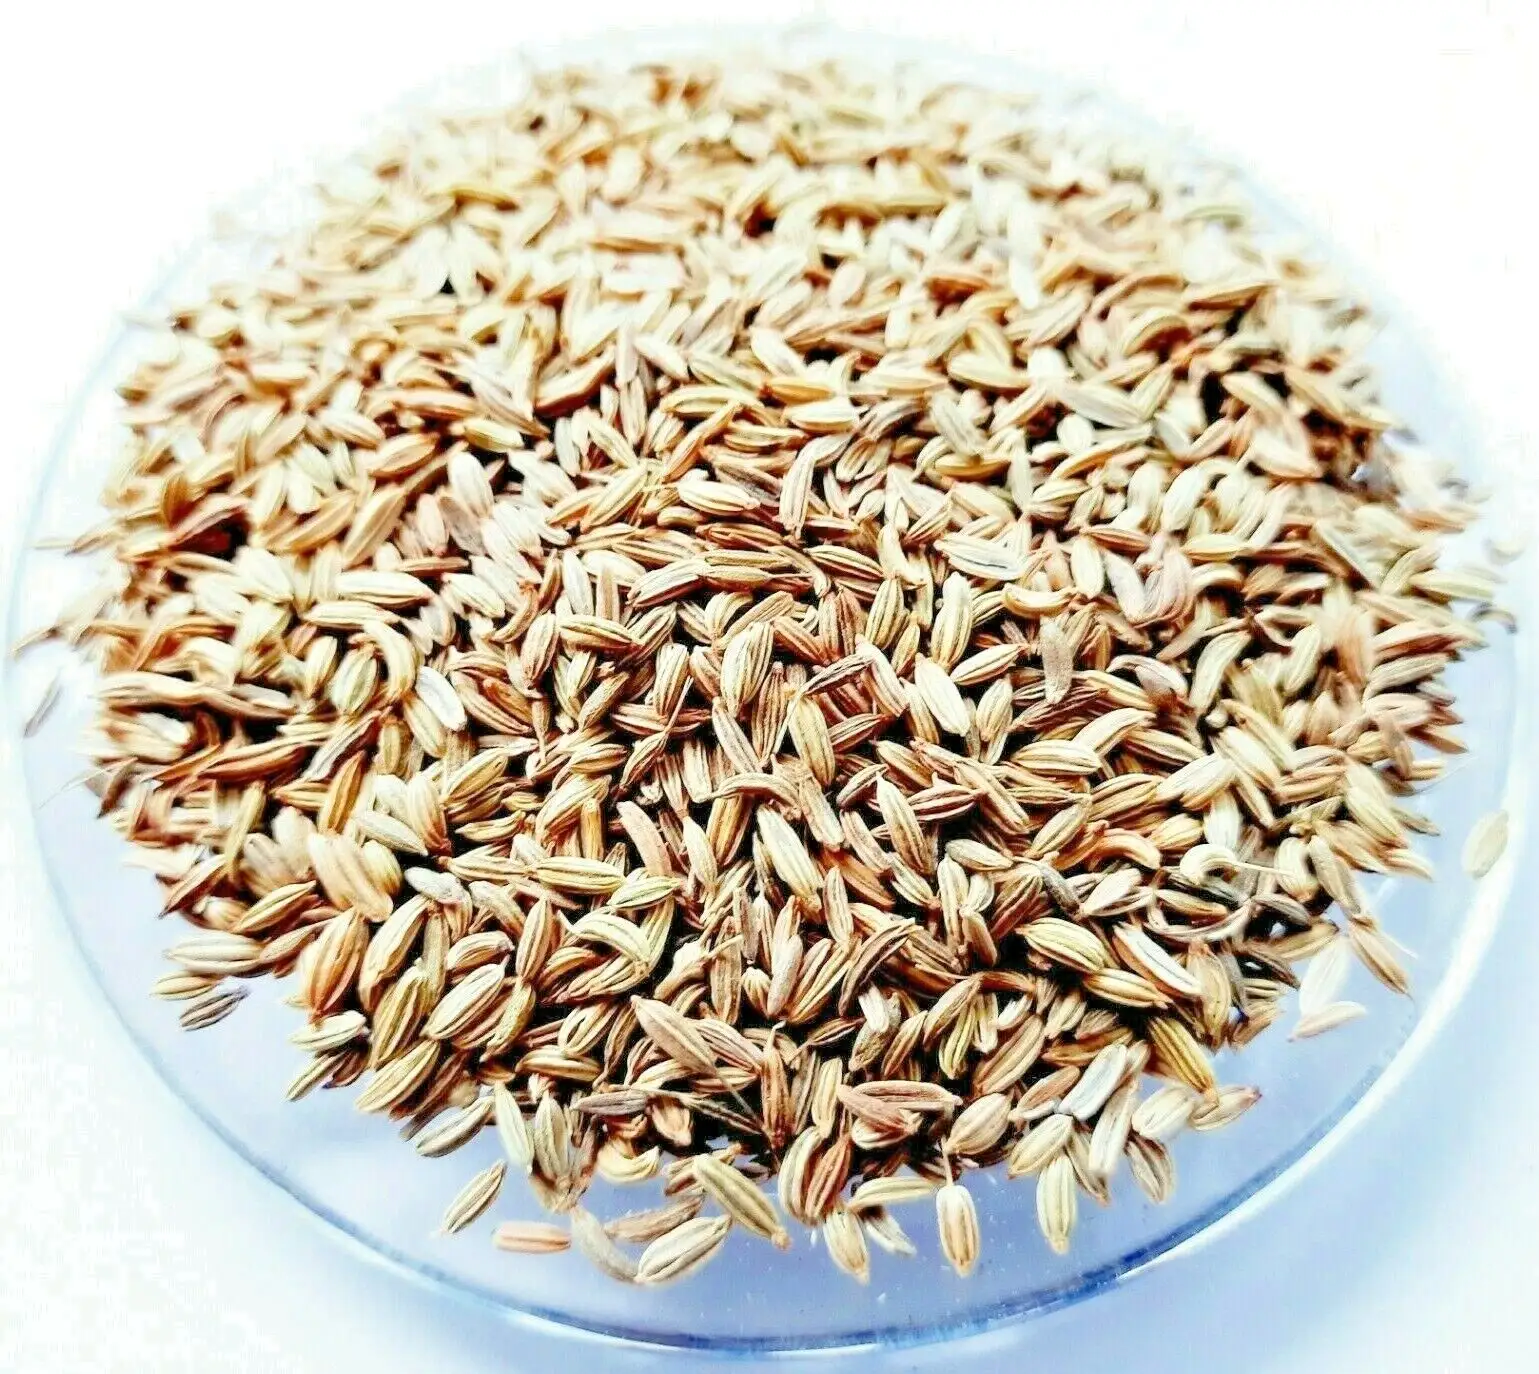 Chất lượng cao tự nhiên màu xanh lá cây thì là hạt giống duy nhất gia vị sản xuất tại Ấn Độ ngọt ngào và cho Đinh Hương Quế Hạt tiêu đen